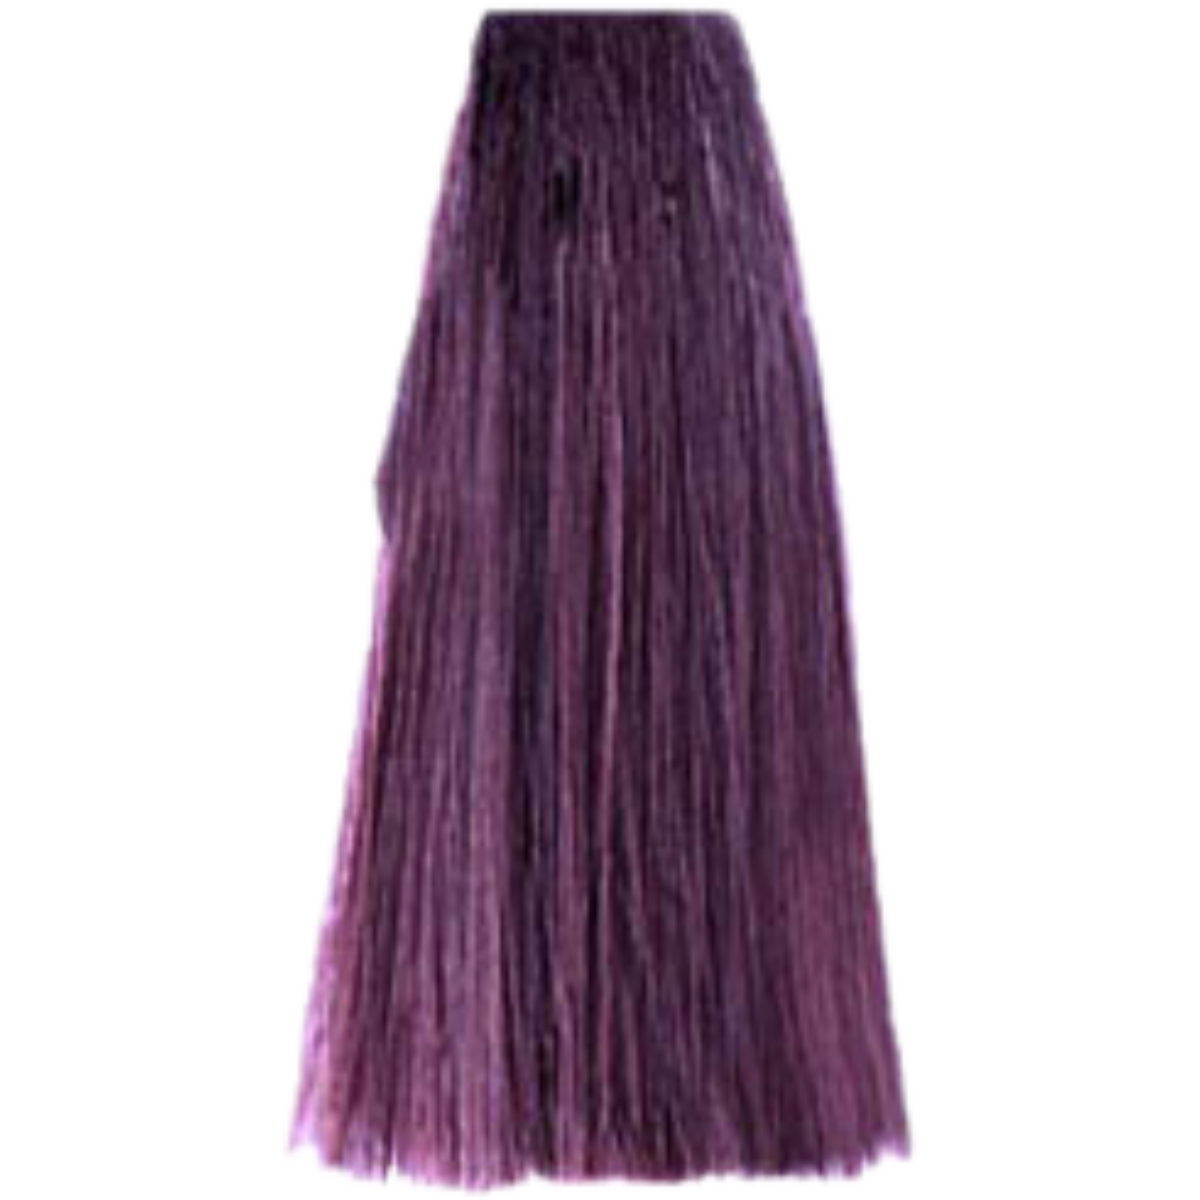 צבע שיער 6.26 VIOLET IRISEE פארמויטה FarmaVita צבע לשיער 100 גרם